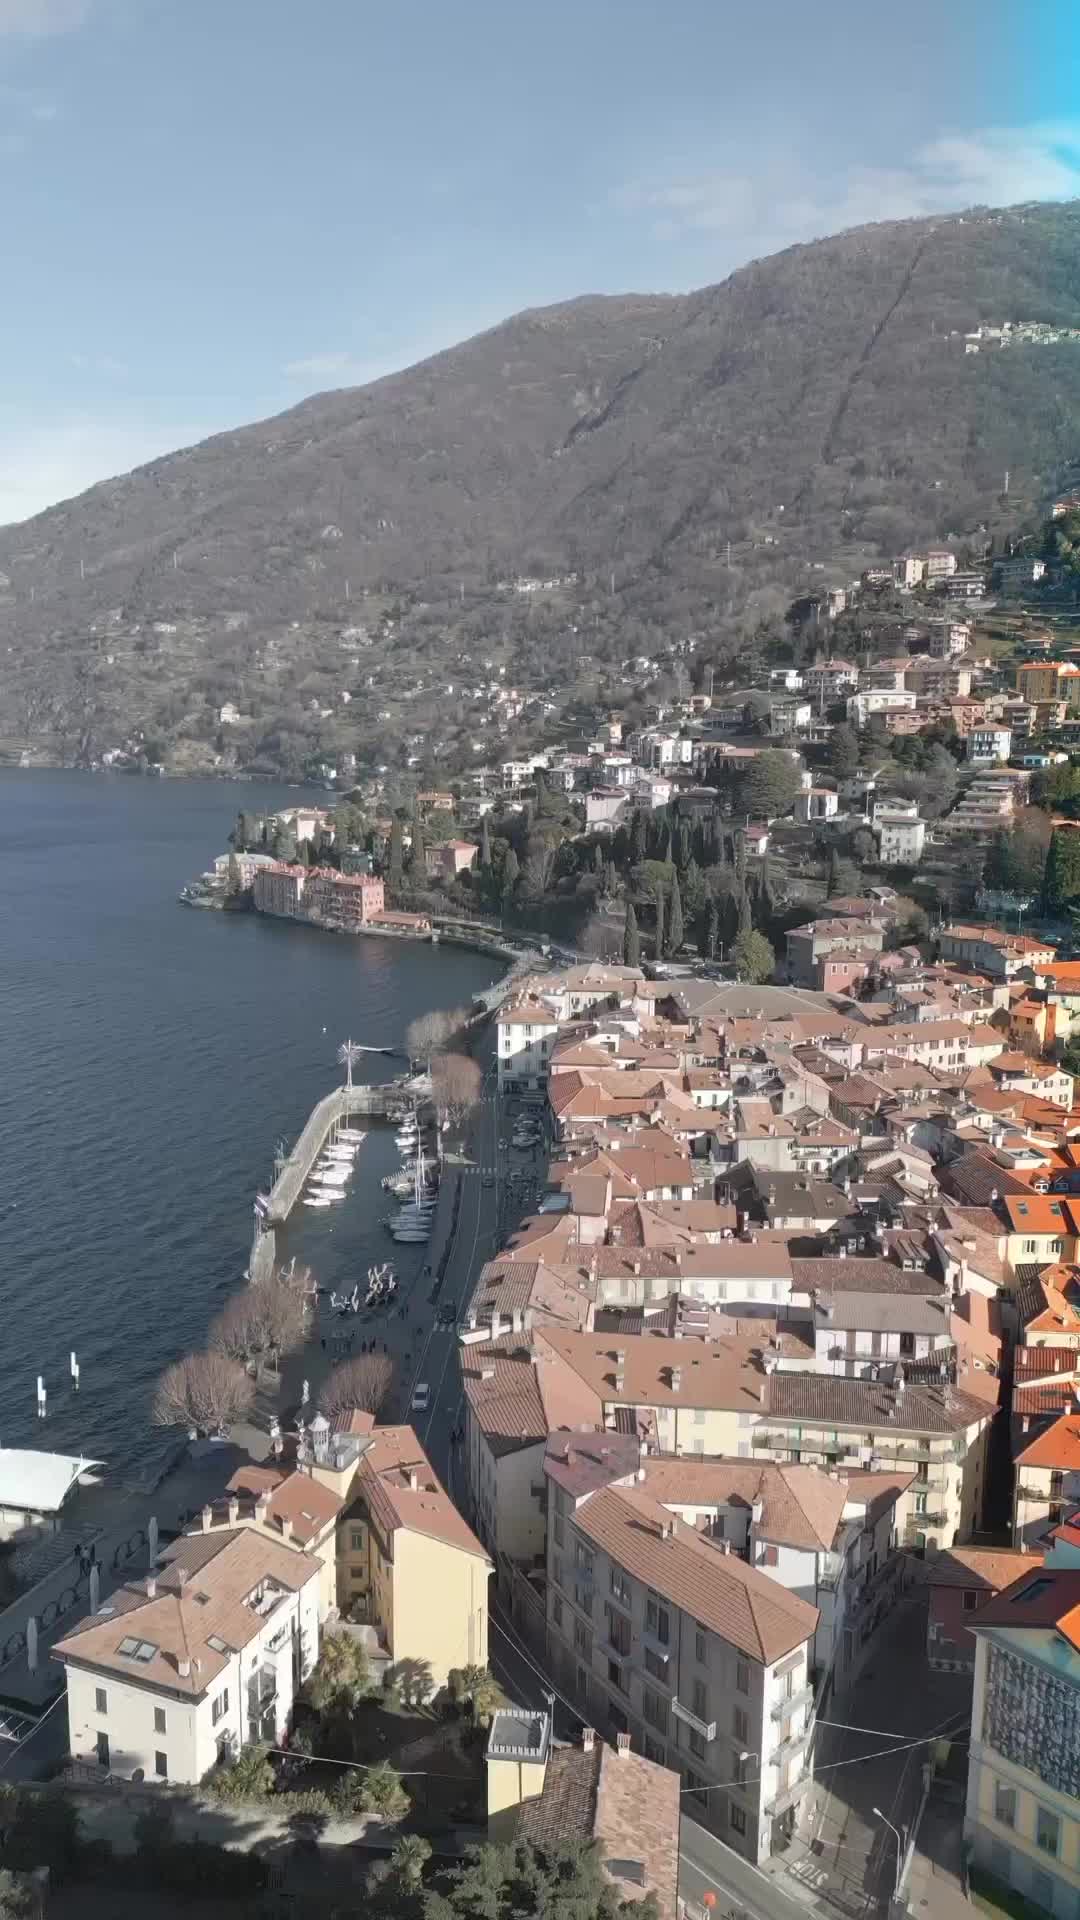 🌅🇮🇹 Bellano sul Lago di Como, uno dei @borghitalia 

Incastonato sulle colline che sovrastano il lago, questo affascinante borgo è ricco di vicoli stretti, case colorate e splendide viste. 🏡🌄 Che tu stia passeggiando lungo la riva o esplorando il centro storico medievale, c’è qualcosa di magico nell’atmosfera di Bellano.

Il Lago di Como è una delle destinazioni più famose in Italia, ed è facile capire perché. Dalle sue acque cristalline alle sue maestose montagne, questa regione è un tripudio per i sensi. 🌊⛰️ 

—

📌Location: Bellano, Italy
🎨 Created with: Da Vinci

—

#lakecomo #lagodicomo #comolake #italy #italia #varenna #lake #lombardia #como #lago #lakecomoitaly #ig_italy #igersitalia #ig_italia #volgoitalia #italiainunoscatto #italy_vacations #instaitalia #visititaly #beautifuldestinations #top_italia_photo #whatitalyis #loves_madeinitaly #ig_europa #best_italiansites #igerslombardia #lombardia_super_pics #inlombardia #lombardy #volgolombardia